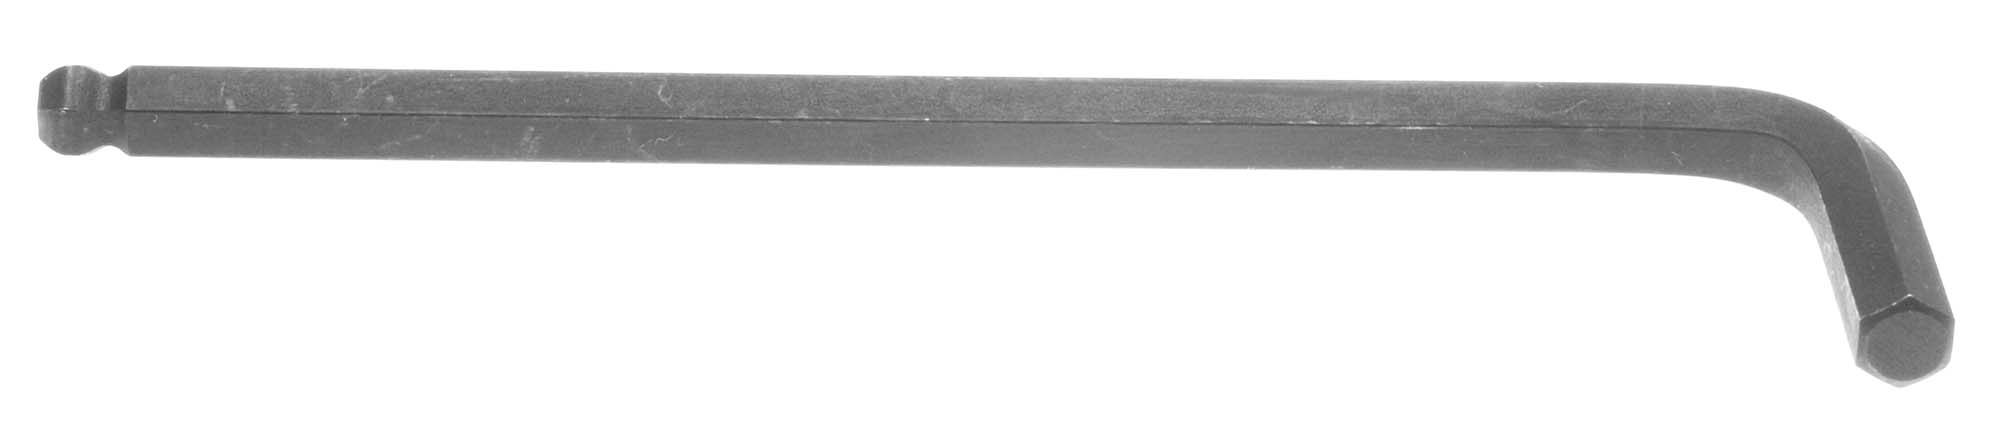 3/8" Bondhus Balldriver L-Wrench Hex Key